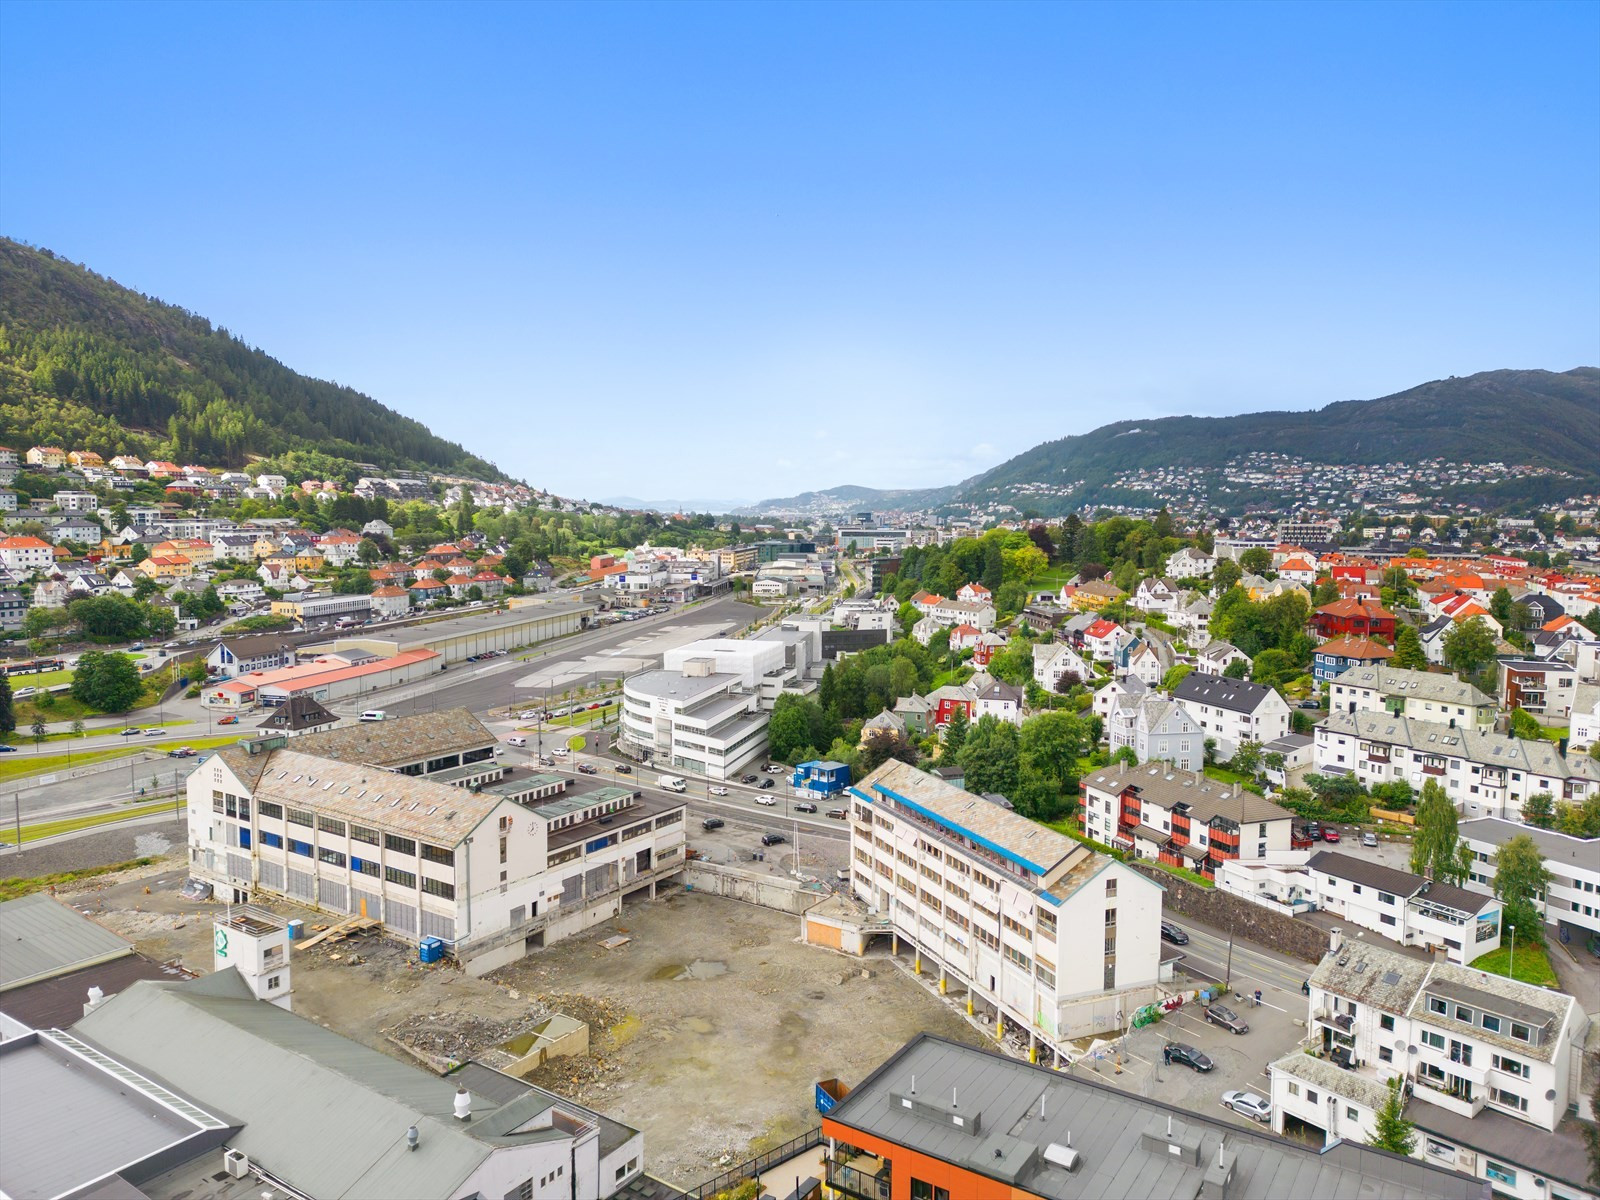 Området Bergensmeieriet ligger på Minde, ca. 3 kilometer fra sentrum og 200 meter fra nærmeste stopp på Bybanen. Her skal det nå utvikles flere hundre boliger i tillegg til næringsvirksomhet.